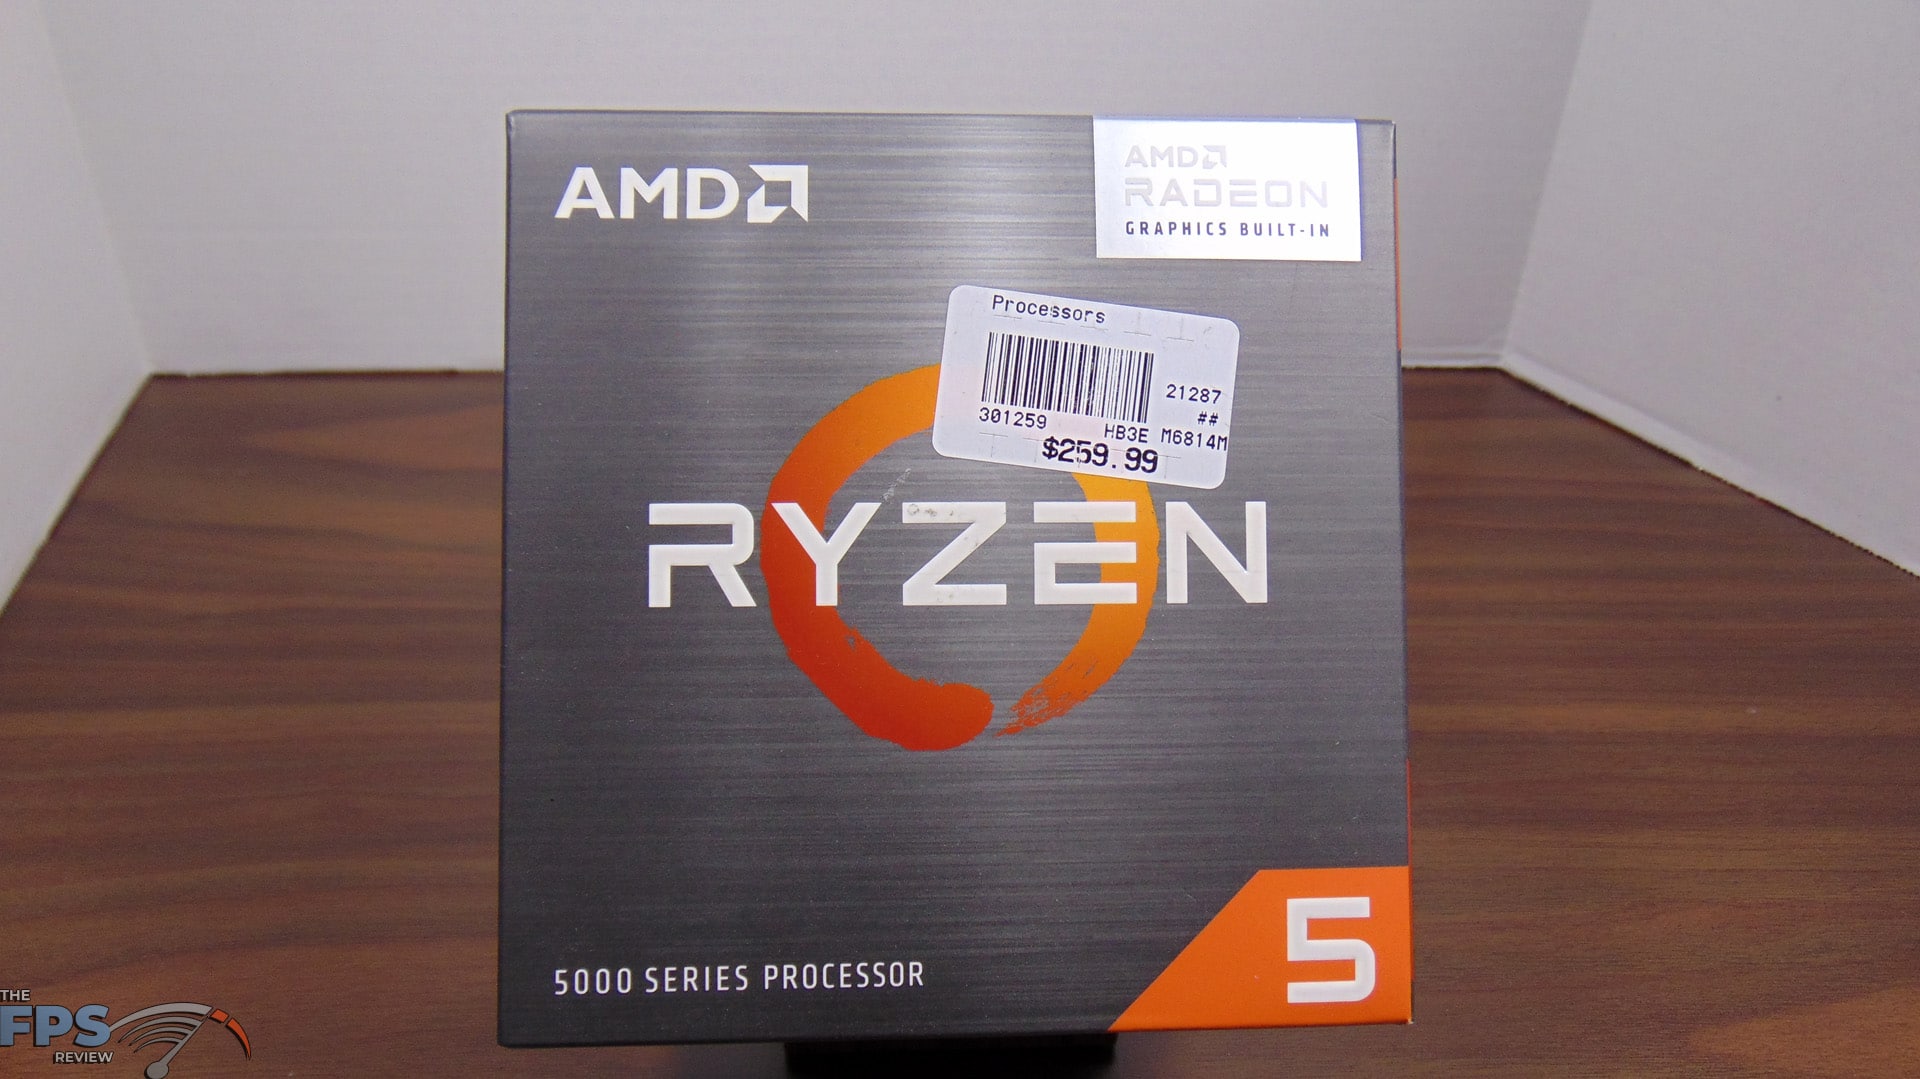 Amd ryzen 5 5600g цены. Ryzen 5 5600g. Процессор AMD Ryzen 5 5600g Box. AMD Ryzen 5 5600g коробка. AMD Ryzen 5 5600g OEM.